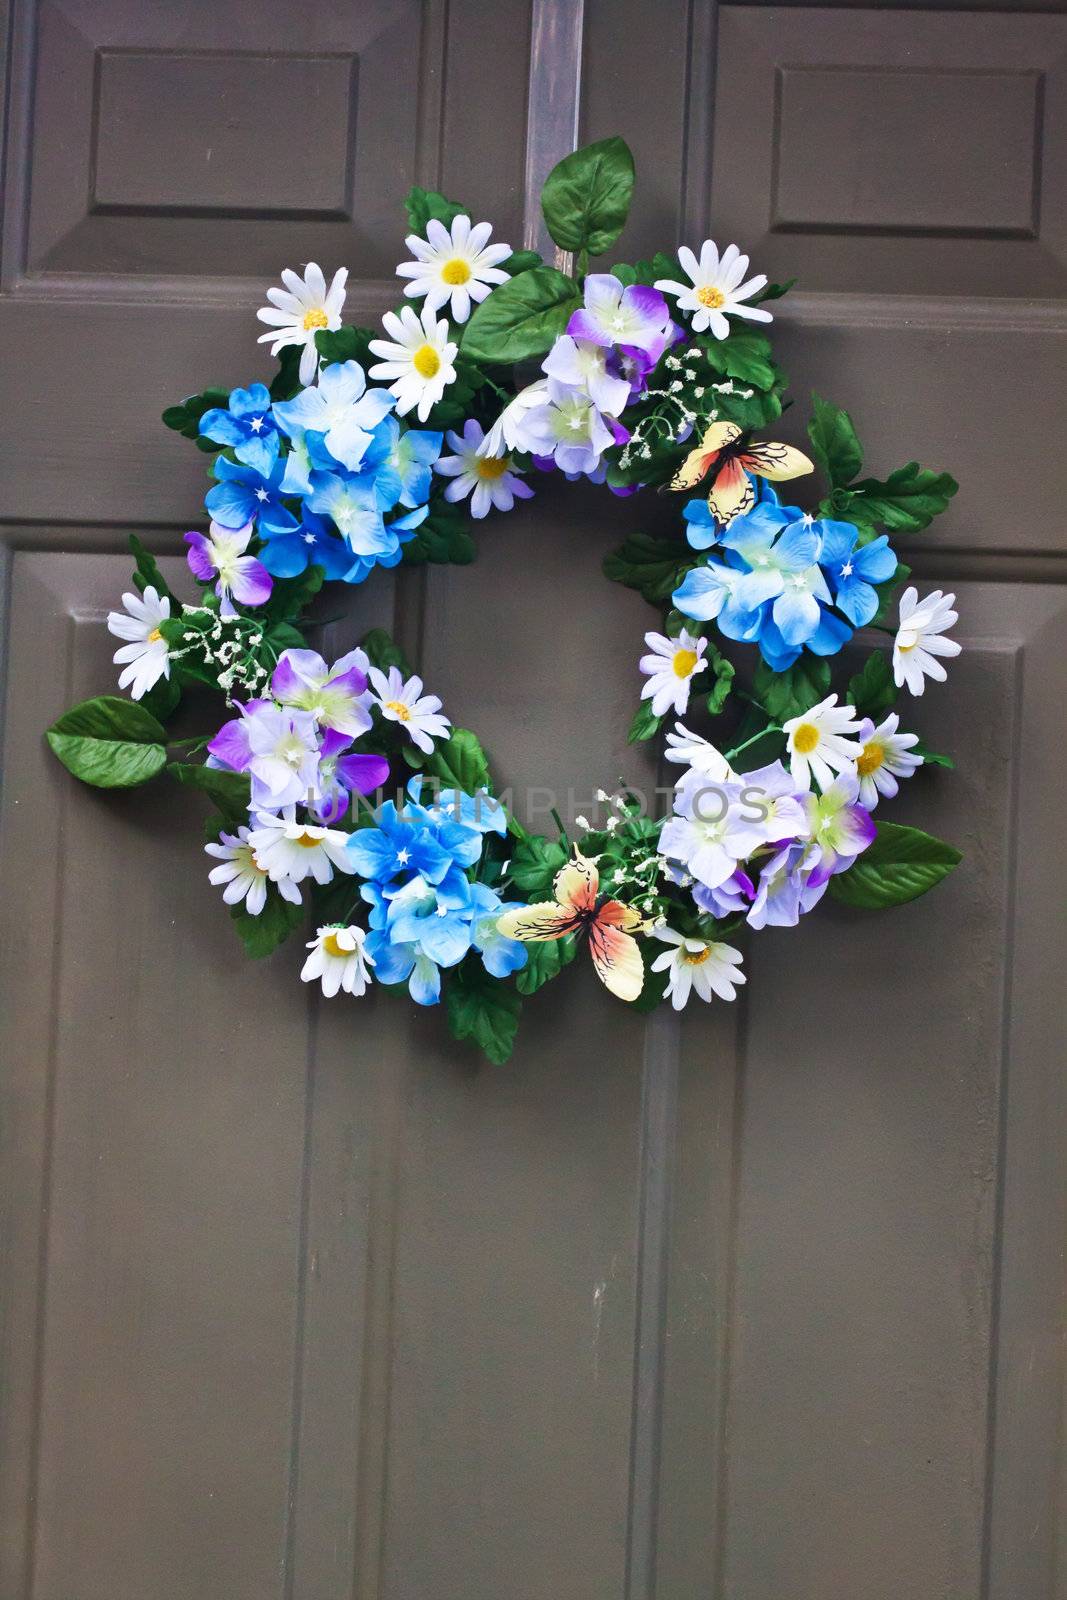 A different colored flowers door wreath  hanging on the door